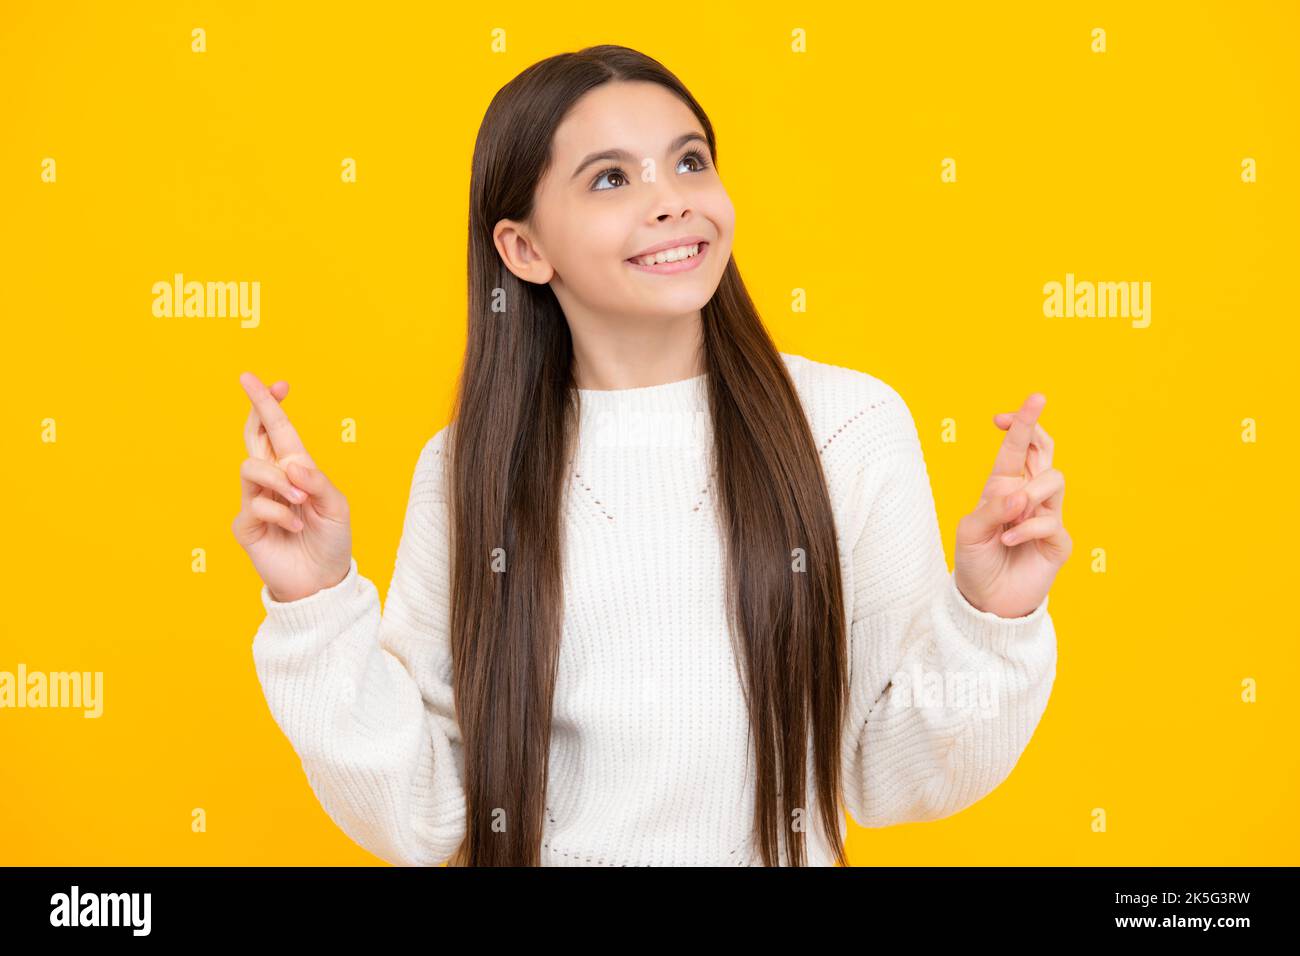 Froh Teenager-Mädchen kreuzt die Finger, erwarten, gute Nachrichten zu hören, isoliert gelben Hintergrund. Glückliches Kind freut sich, dass seine Träume wahr wurden Stockfoto